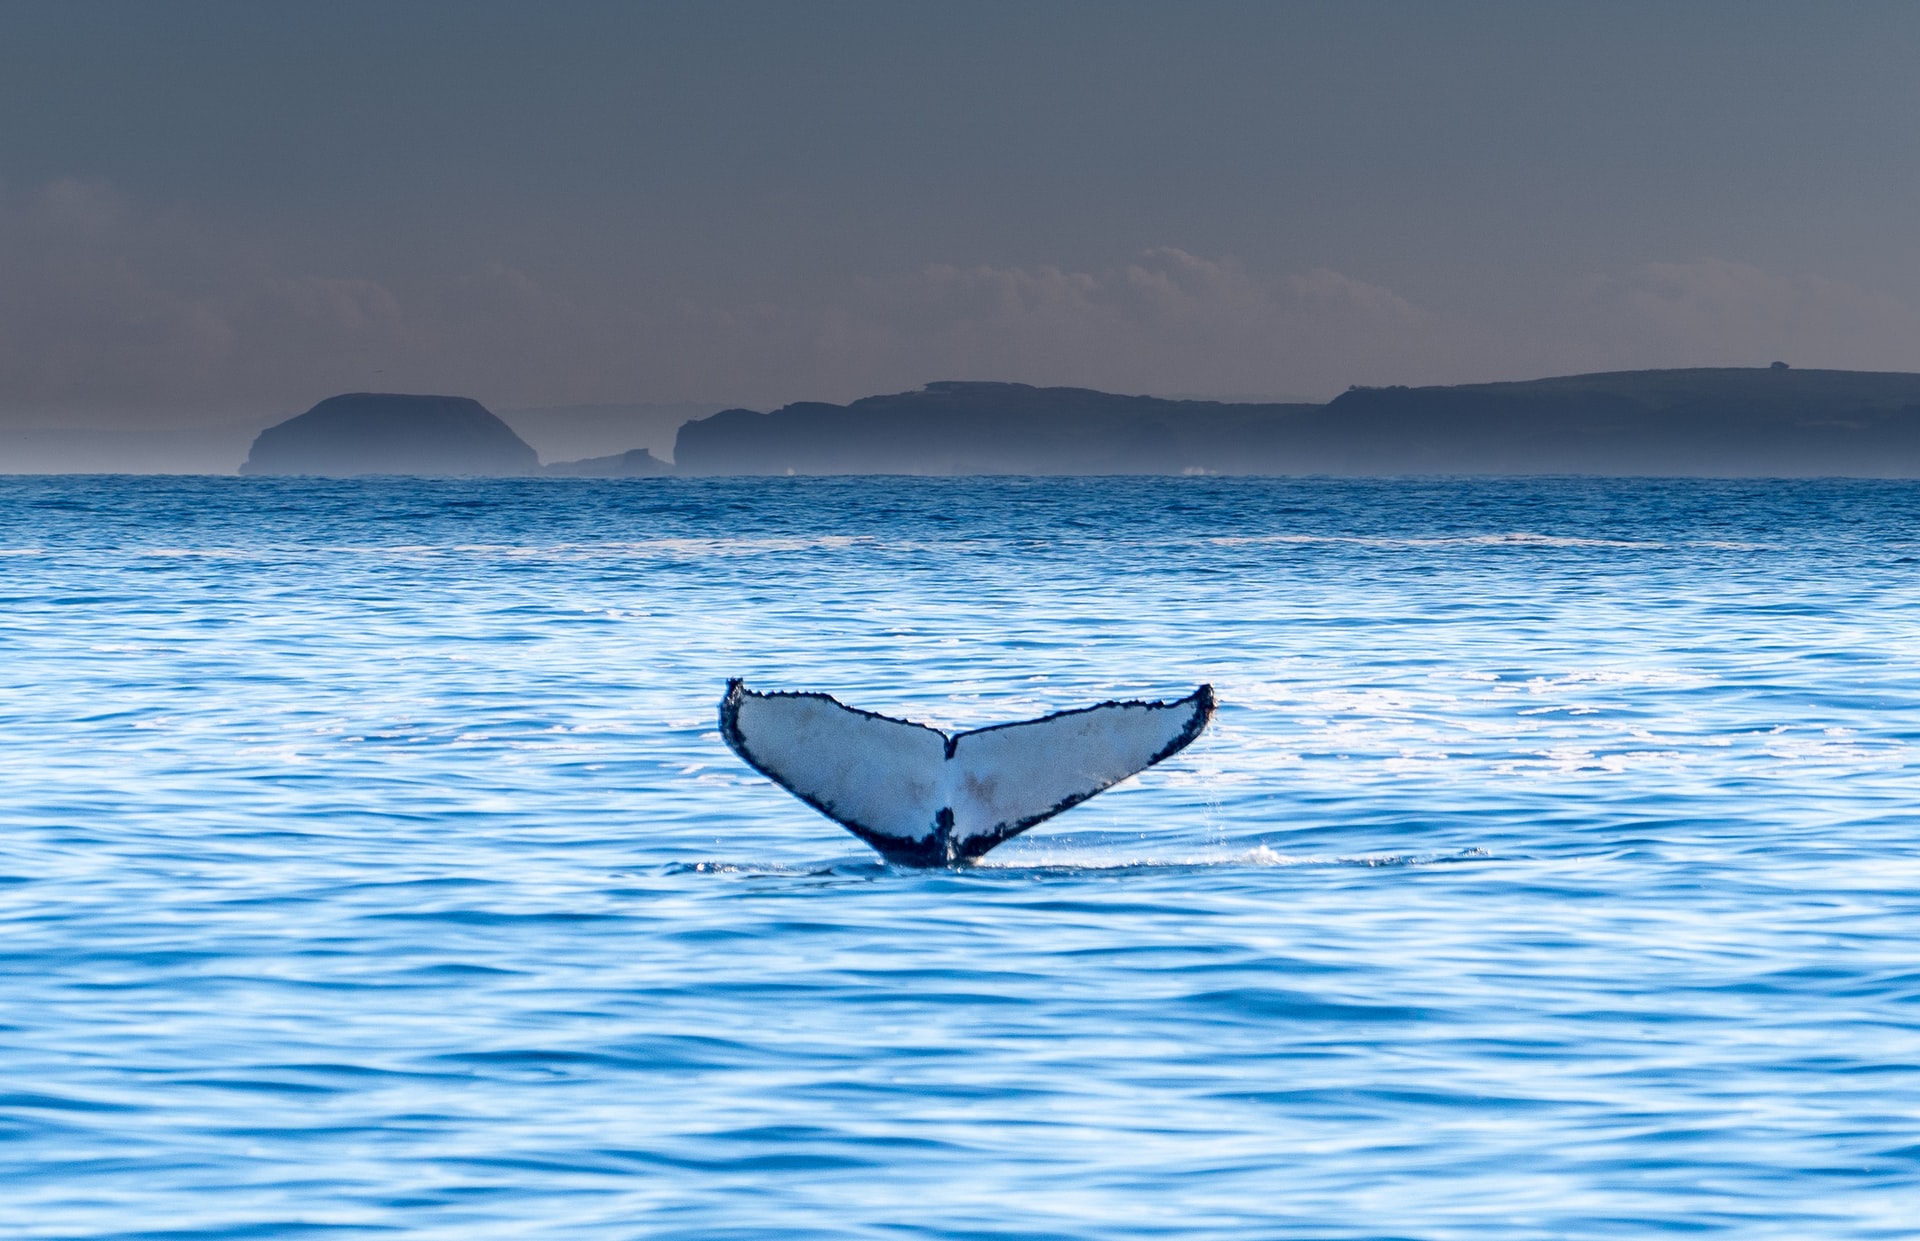 Naarmate meer walvissen worden gedood, raakt de voedseldistributie in de oceaan uit balans en verandert de voedselvoorziening van veel andere soorten zeeleven. Een blauwe vinvis kan bijvoorbeeld tot 40 miljoen krill per dag consumeren, dus je kunt je voorstellen wat de impact op de stabilisering van het aquatische ecosysteem zou zijn als de blauwe vinvissoort zou uitsterven.